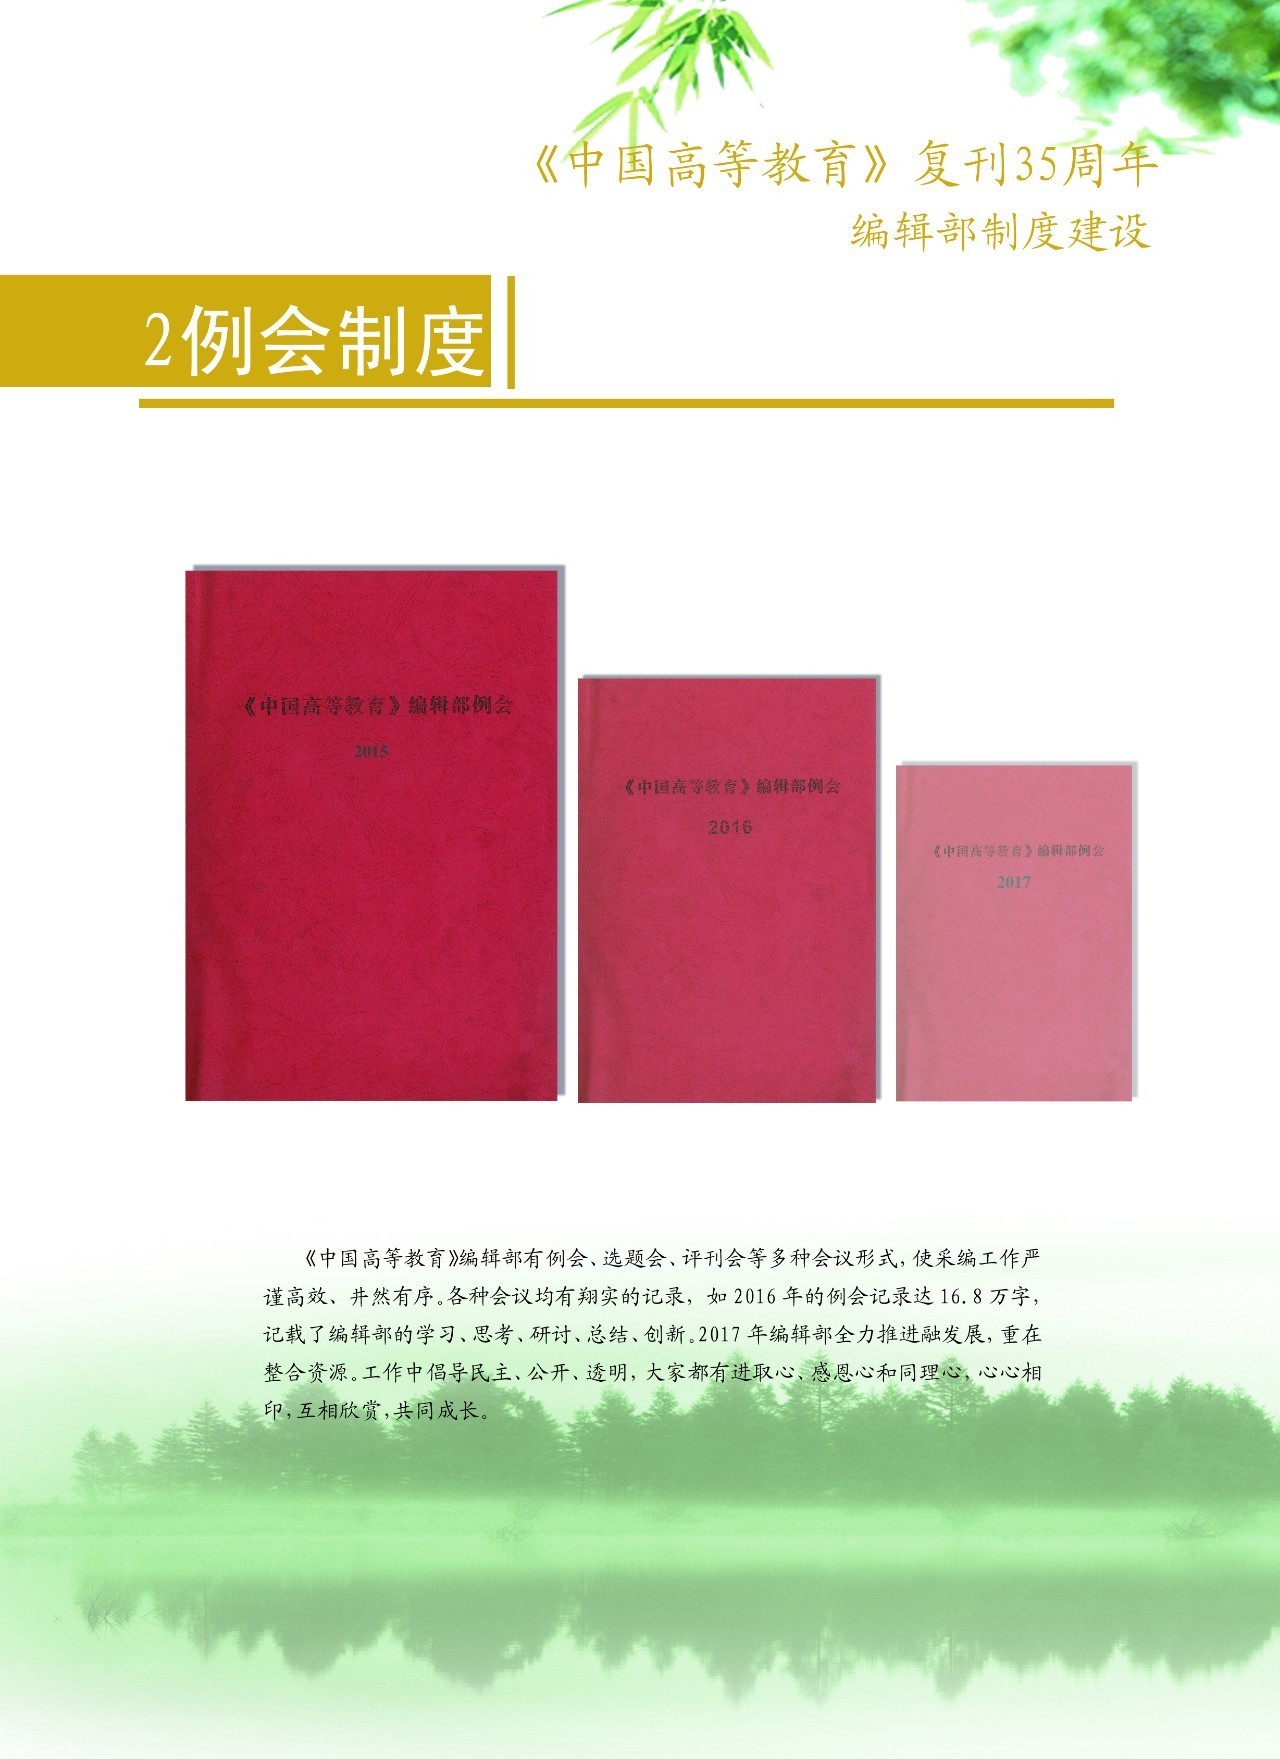 《中国高等教育》复刊35周年:编辑部制度